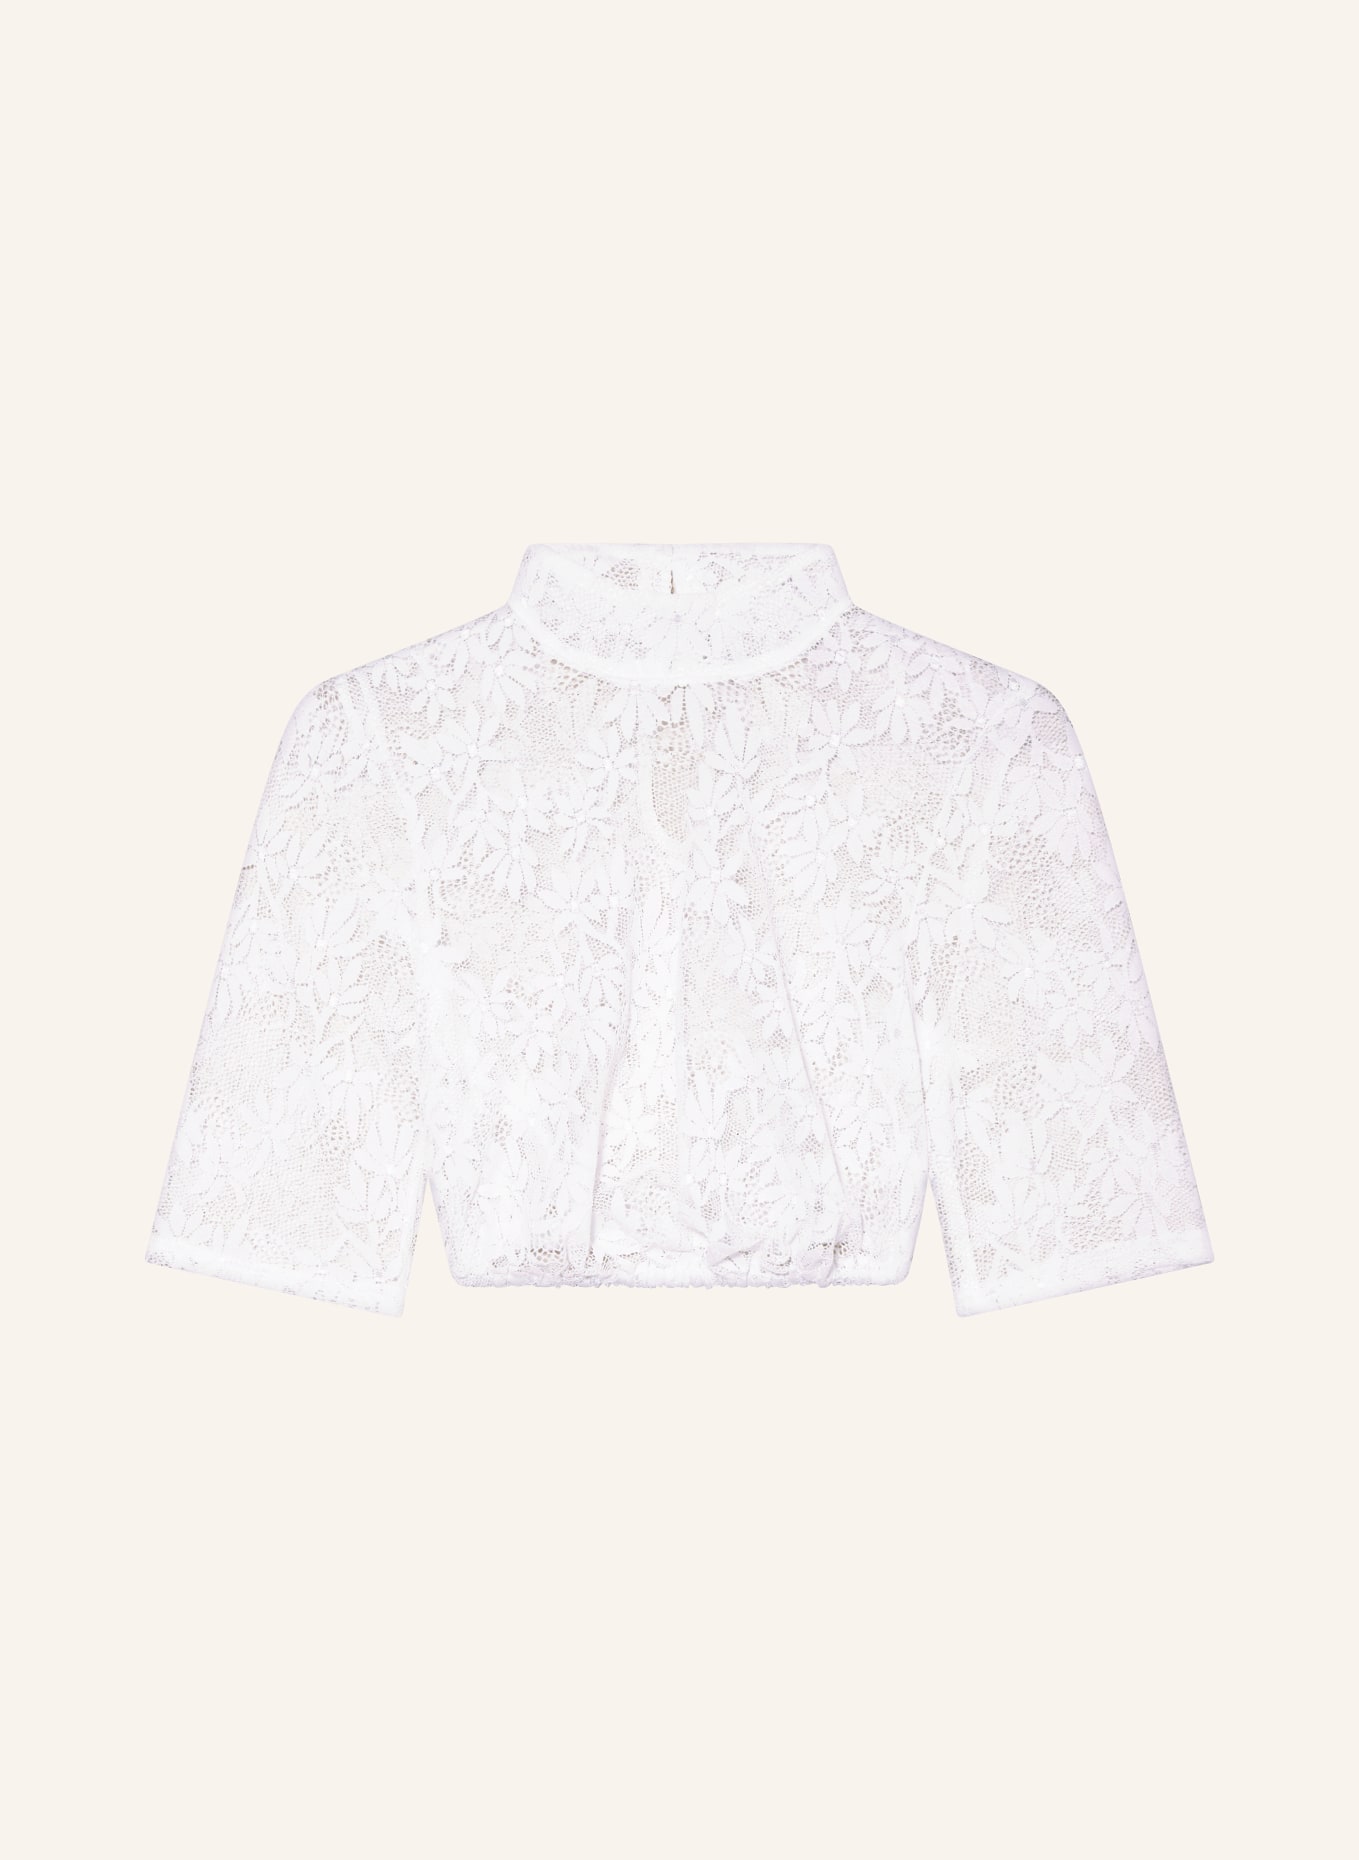 Hammerschmid Dirndl blouse BABSI, Color: WHITE (Image 1)